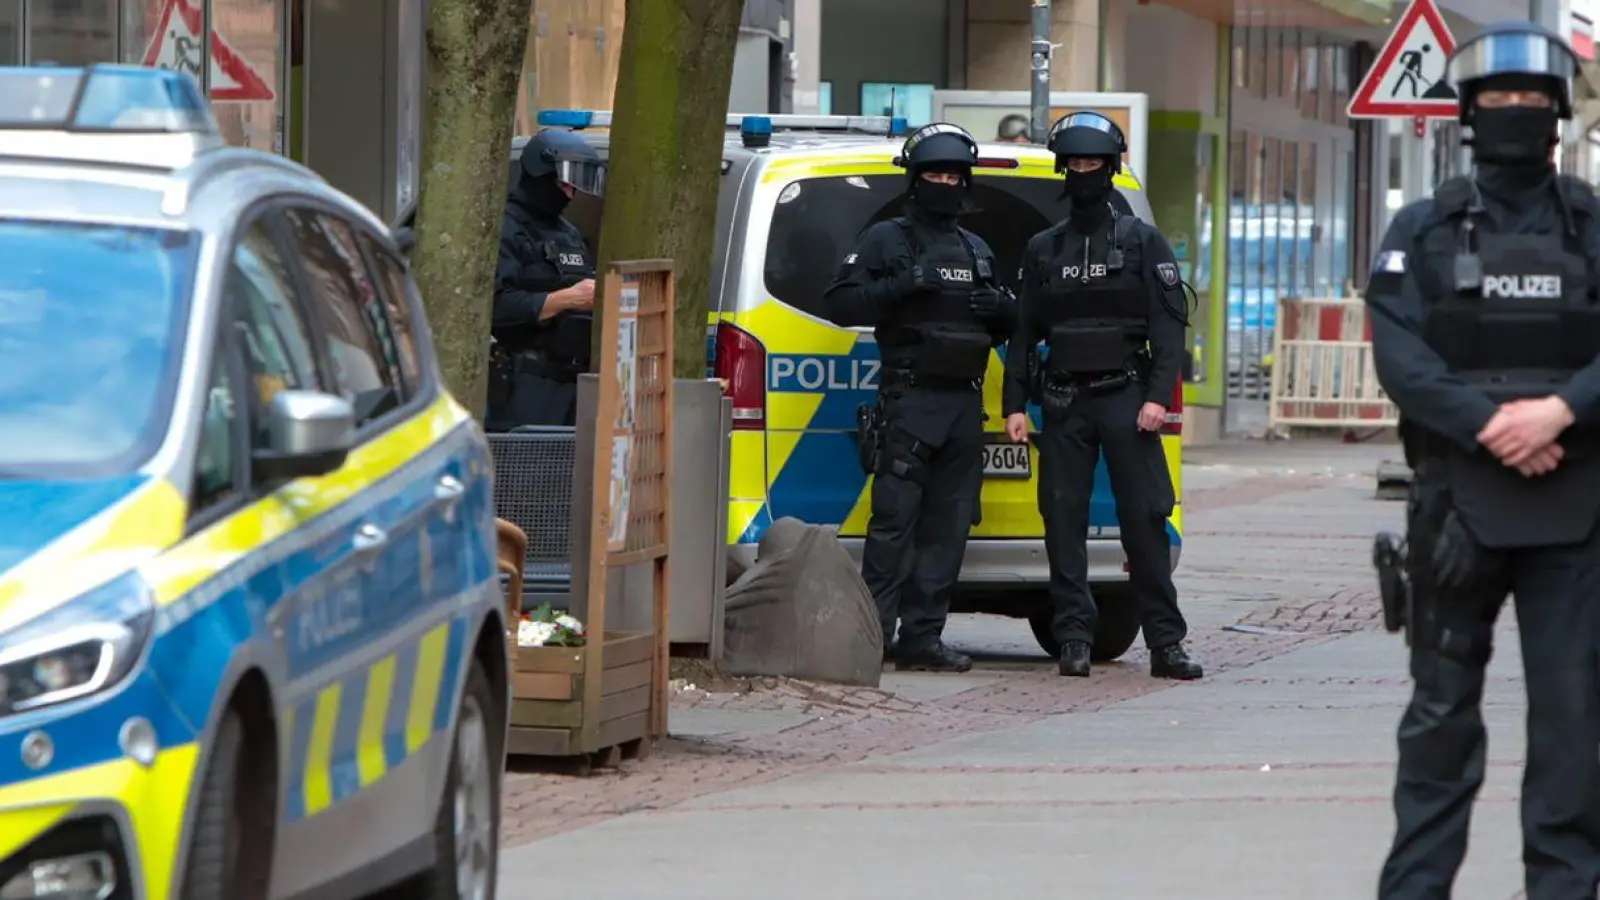 Die Polizei ermittelt nach der Bombendrohung in Bochum. (Foto: Justin Brosch/dpa)